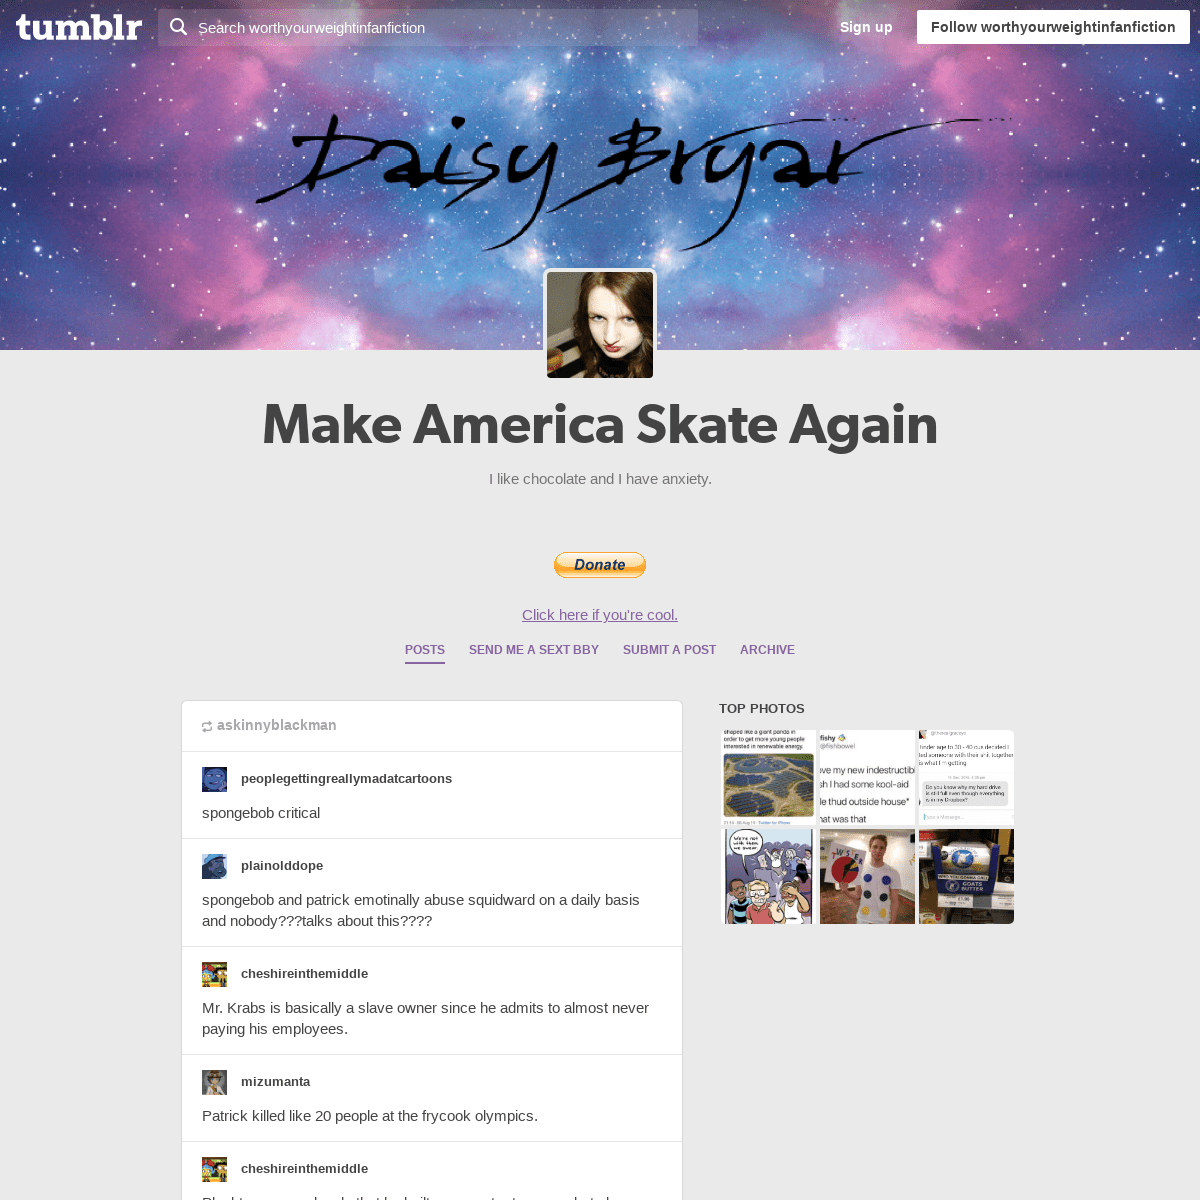 Make America Skate Again